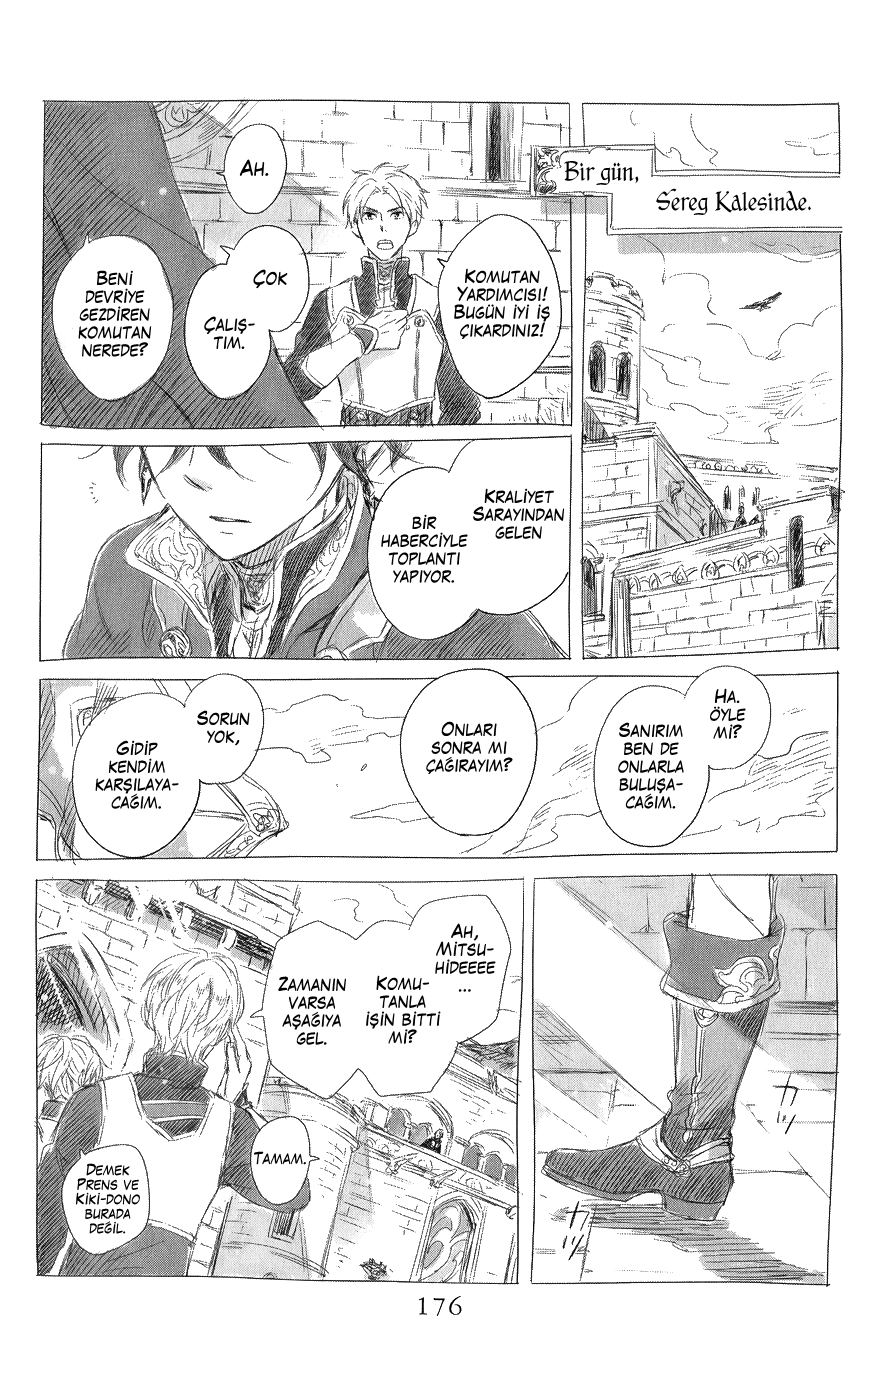 Akagami no Shirayukihime: Chapter 44.5 - Page 3